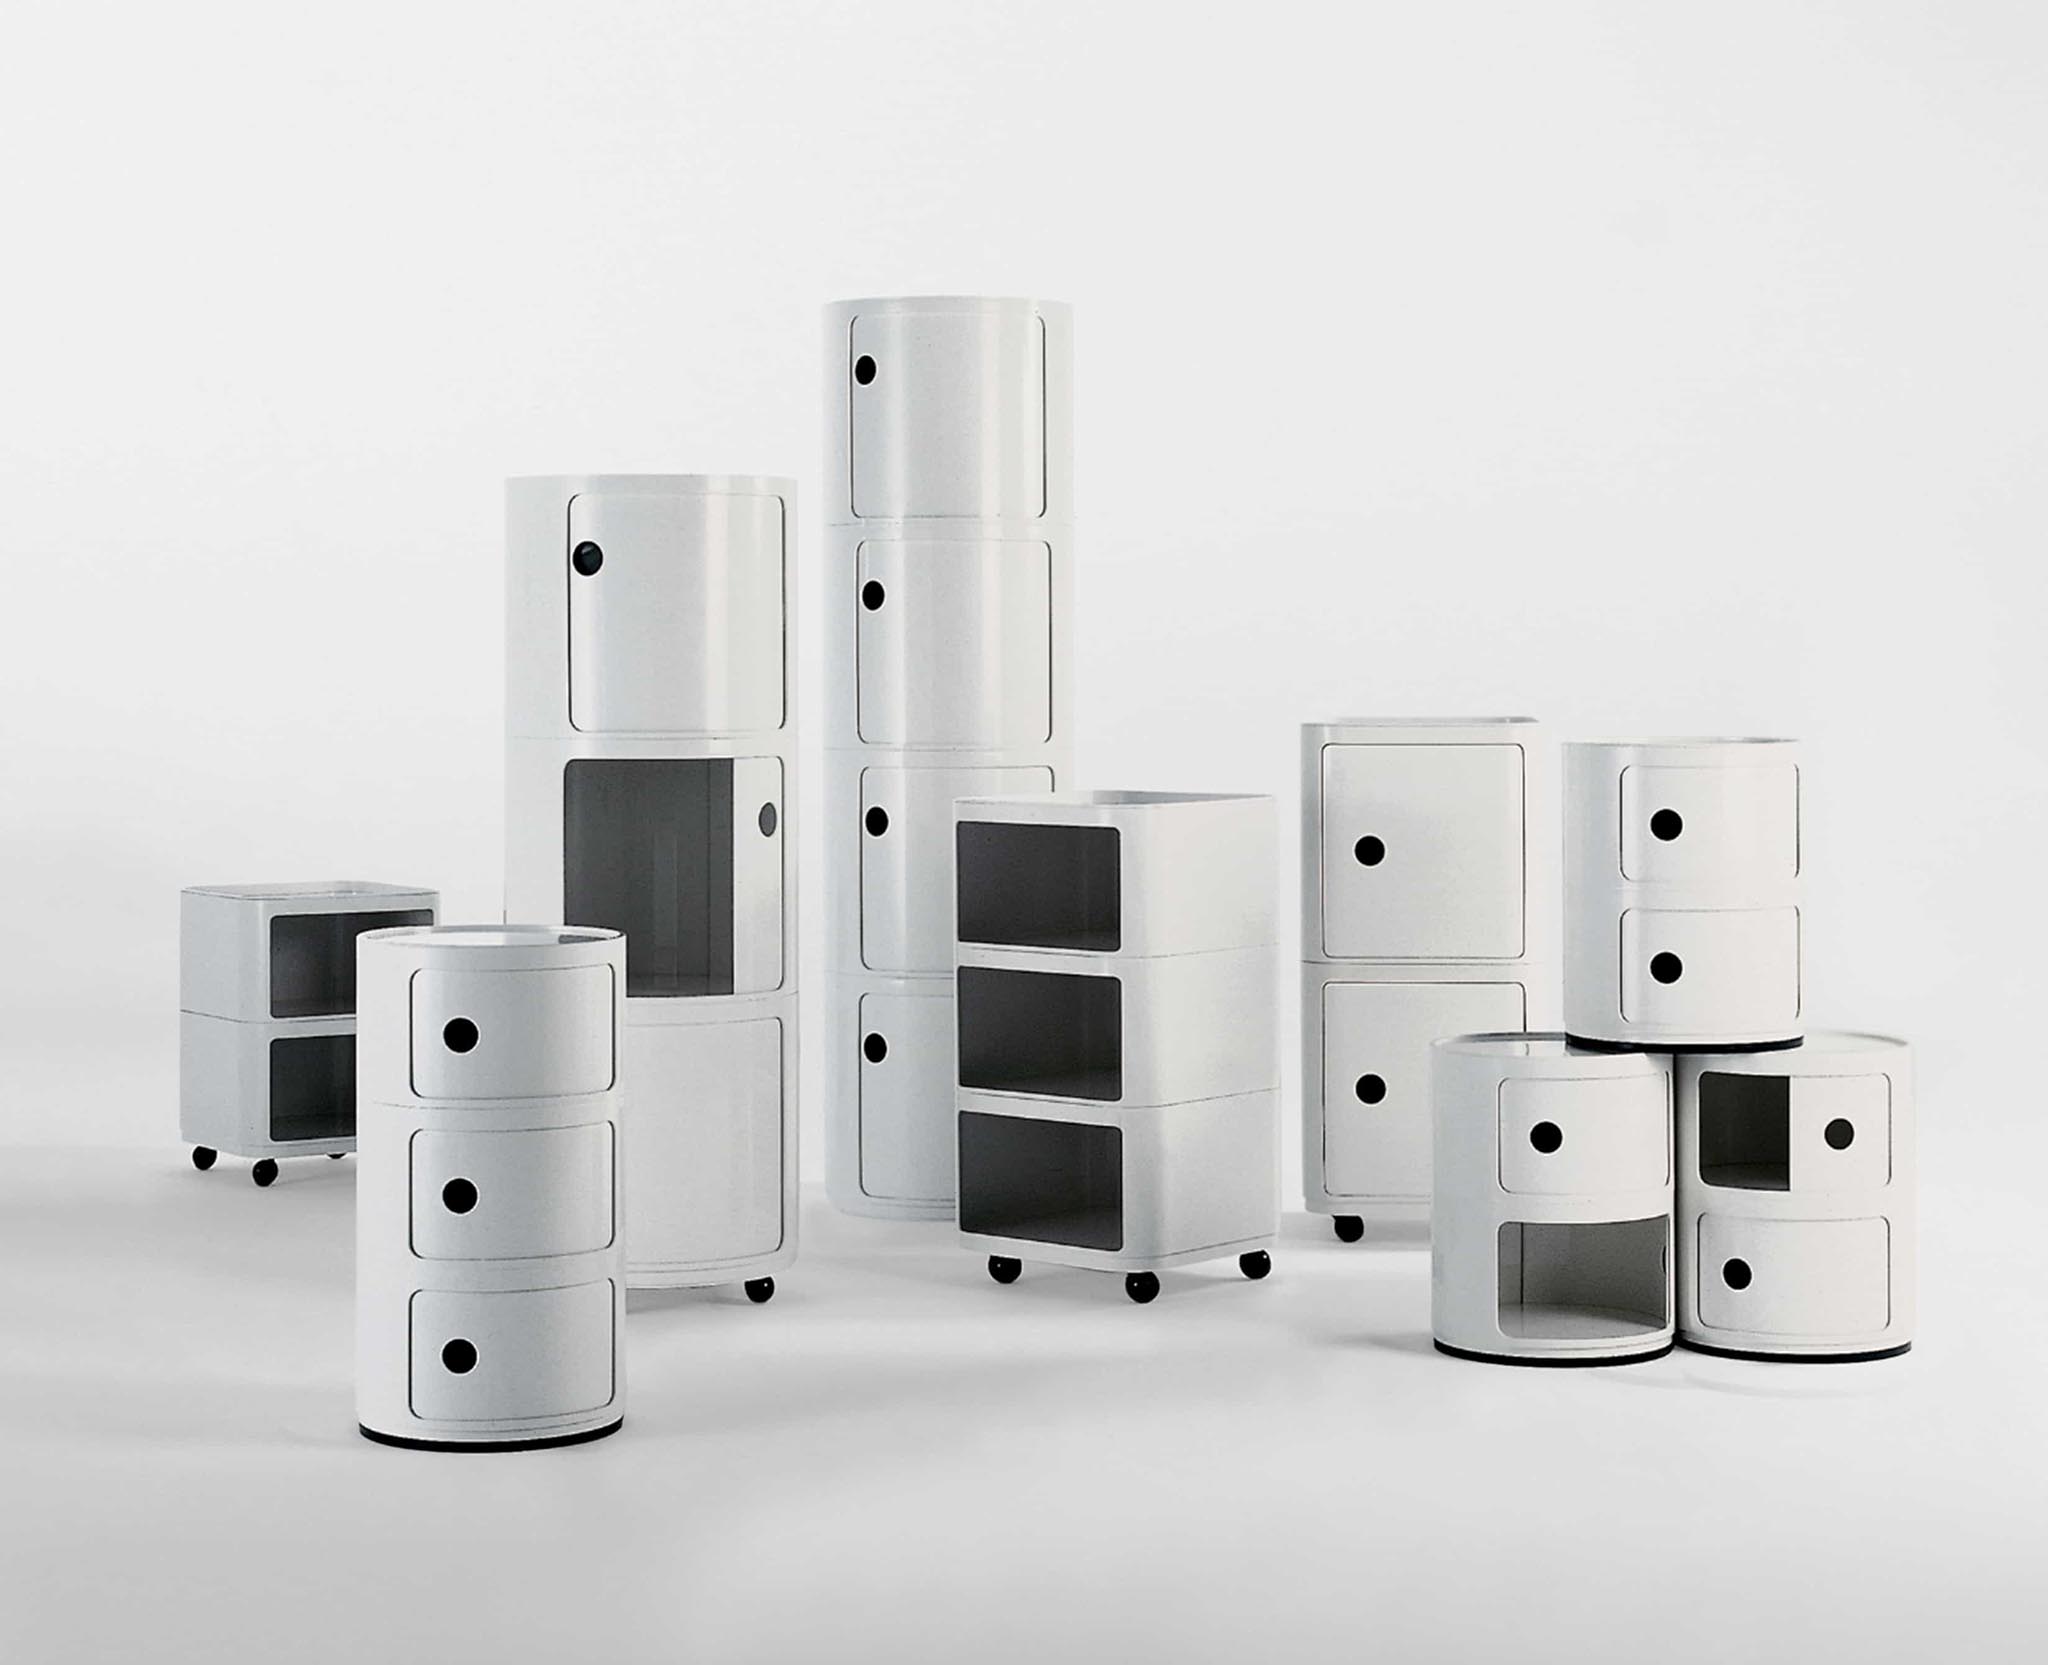 modern white Componibili round storage system by Anna Castelli Ferrieri